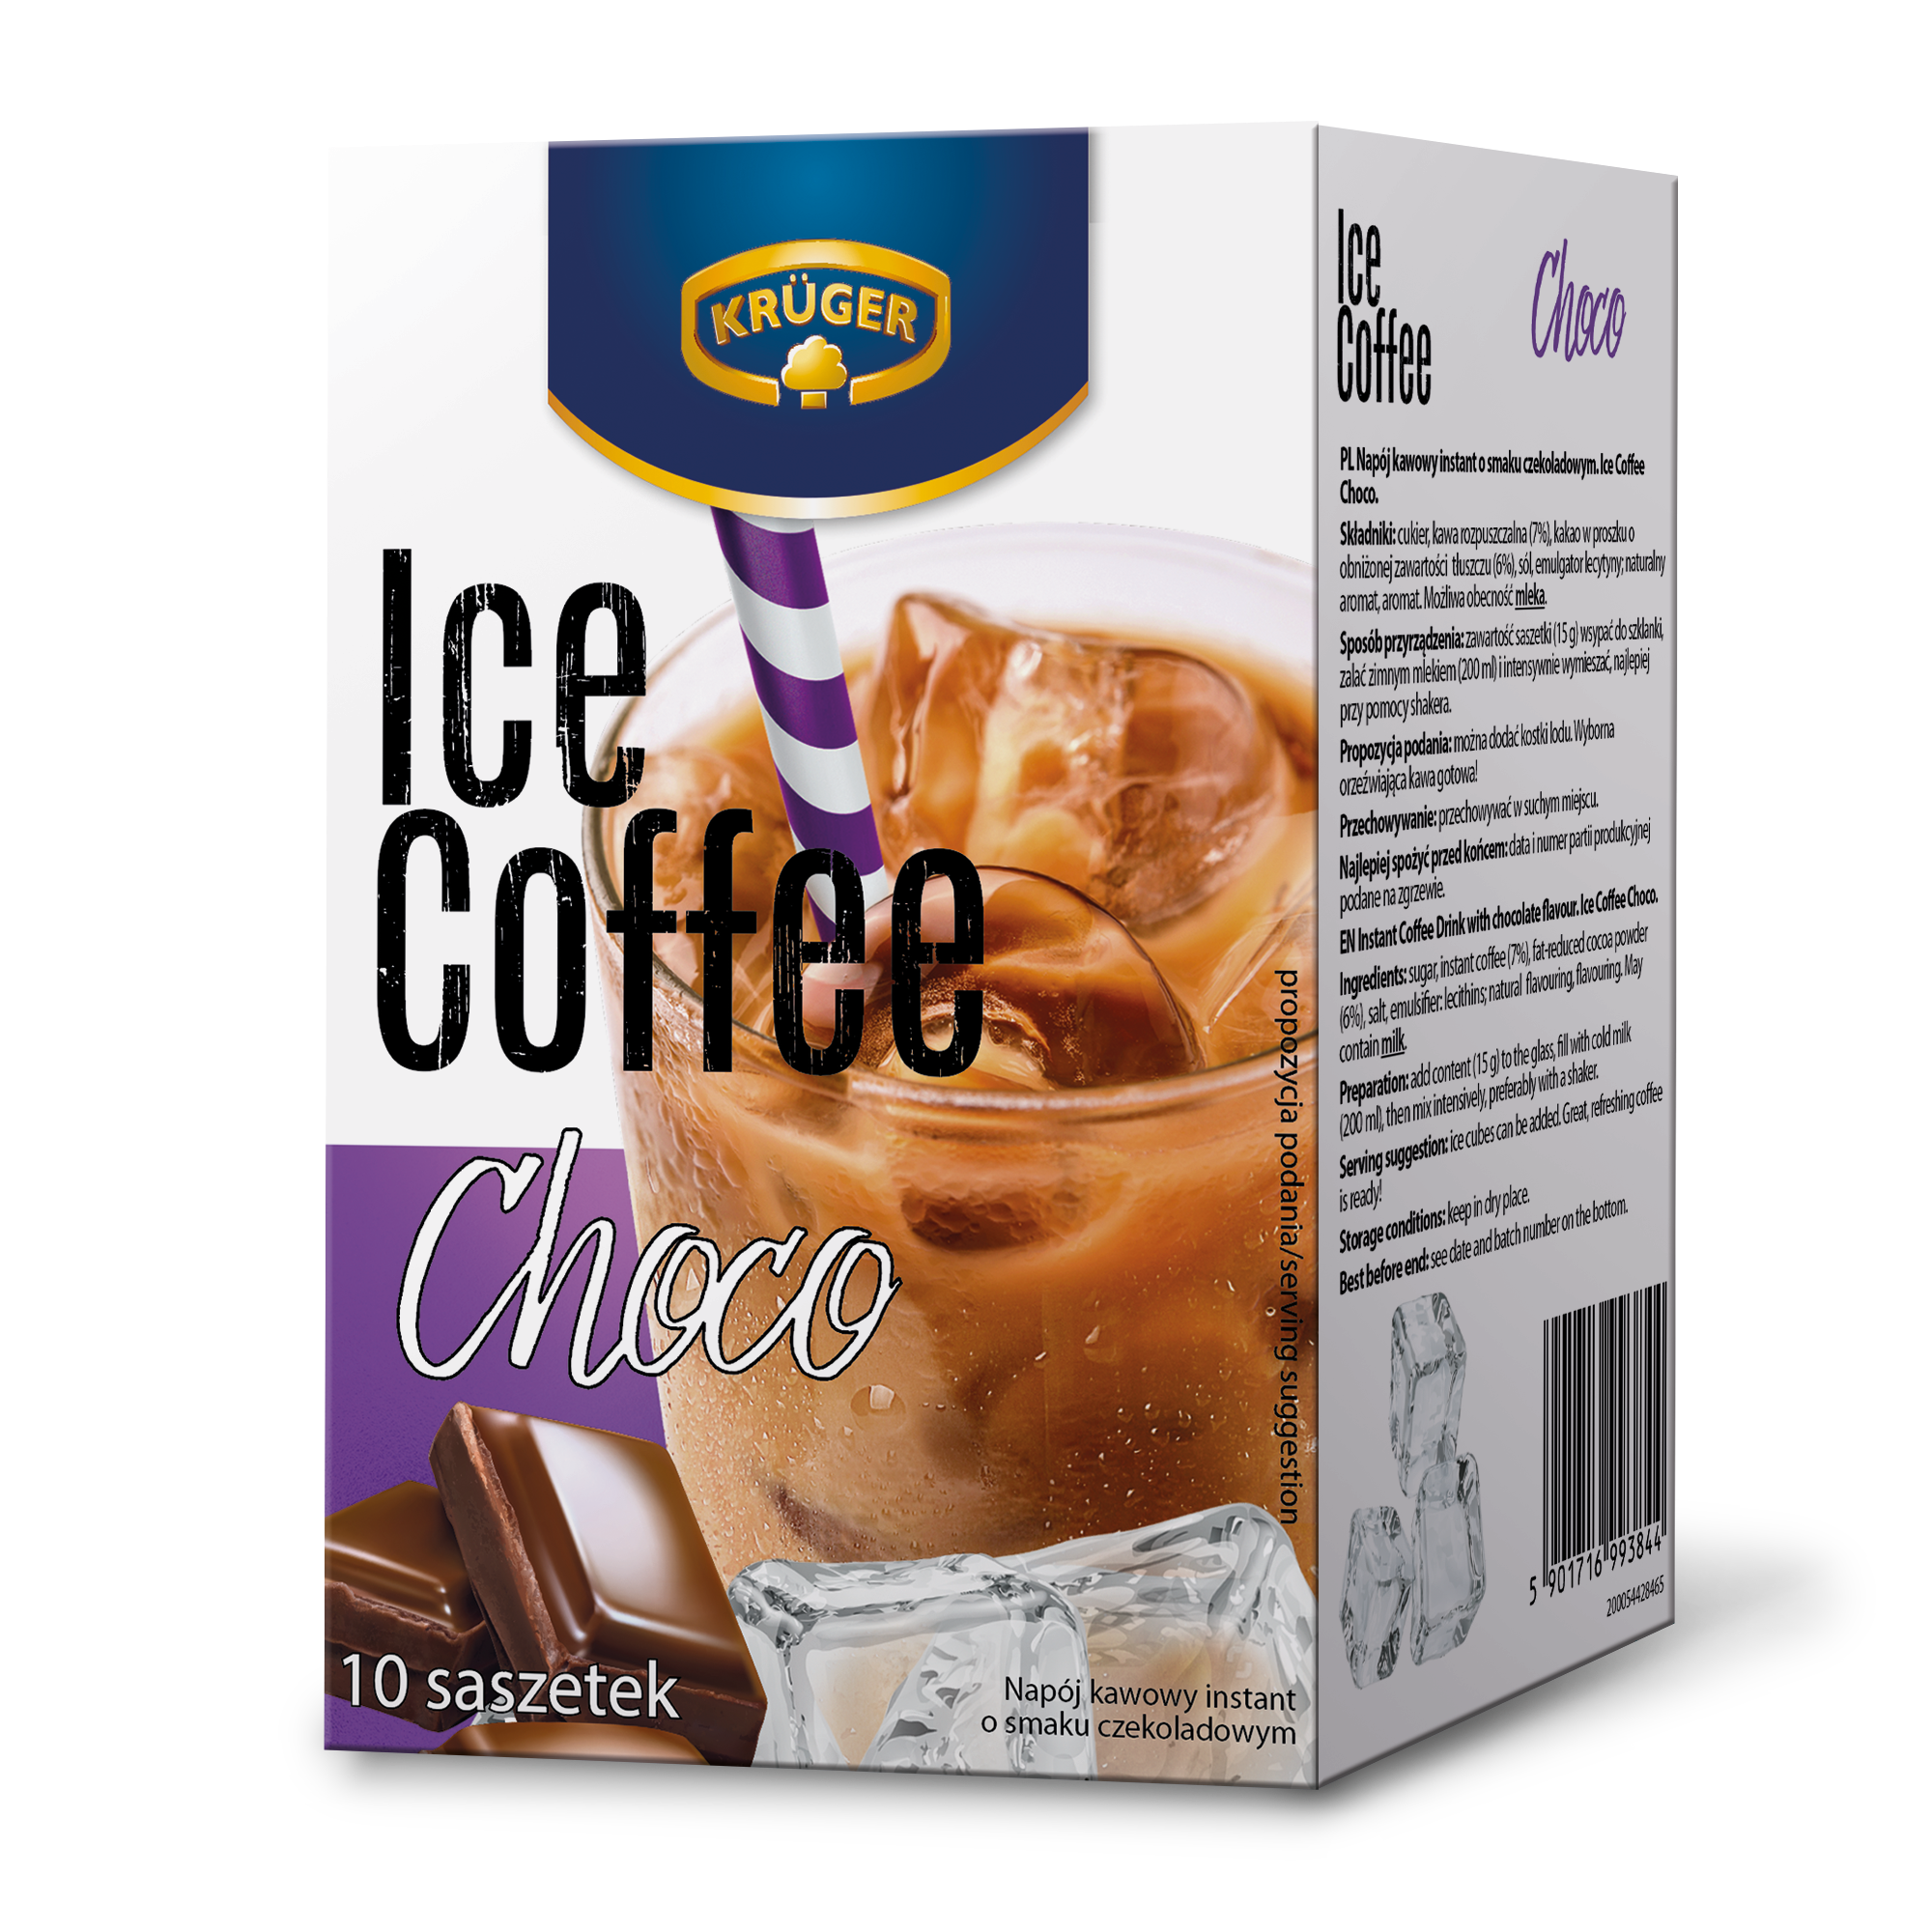 Krüger Ice Coffee Choco napój kawowy instant o smaku czekoladowym 10 saszetek